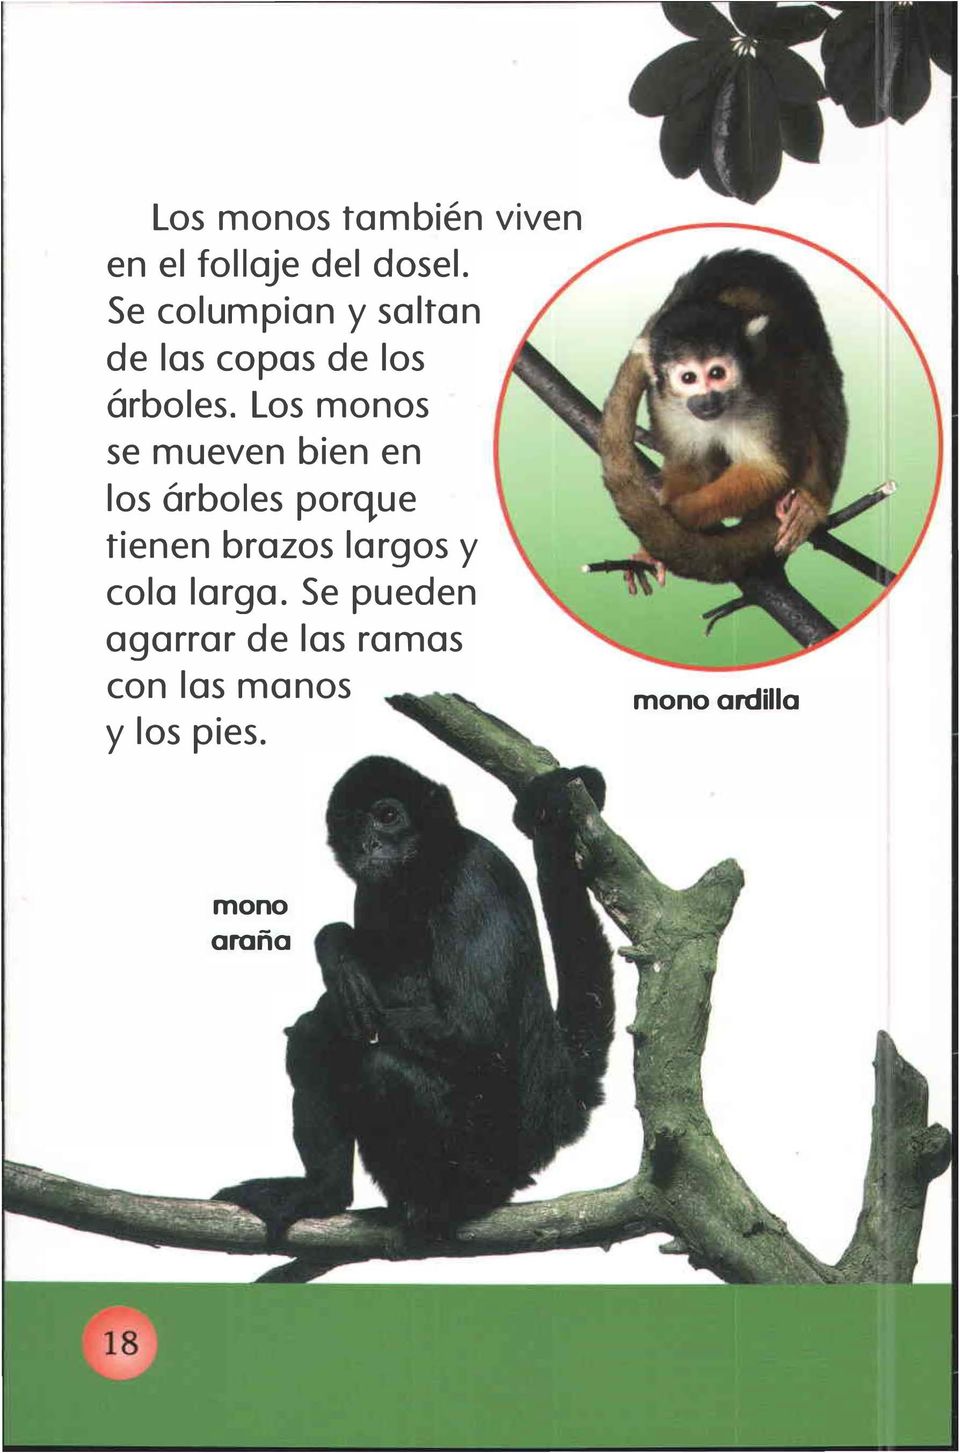 Los monos se mueven bien en los árboles porque tienen brazos